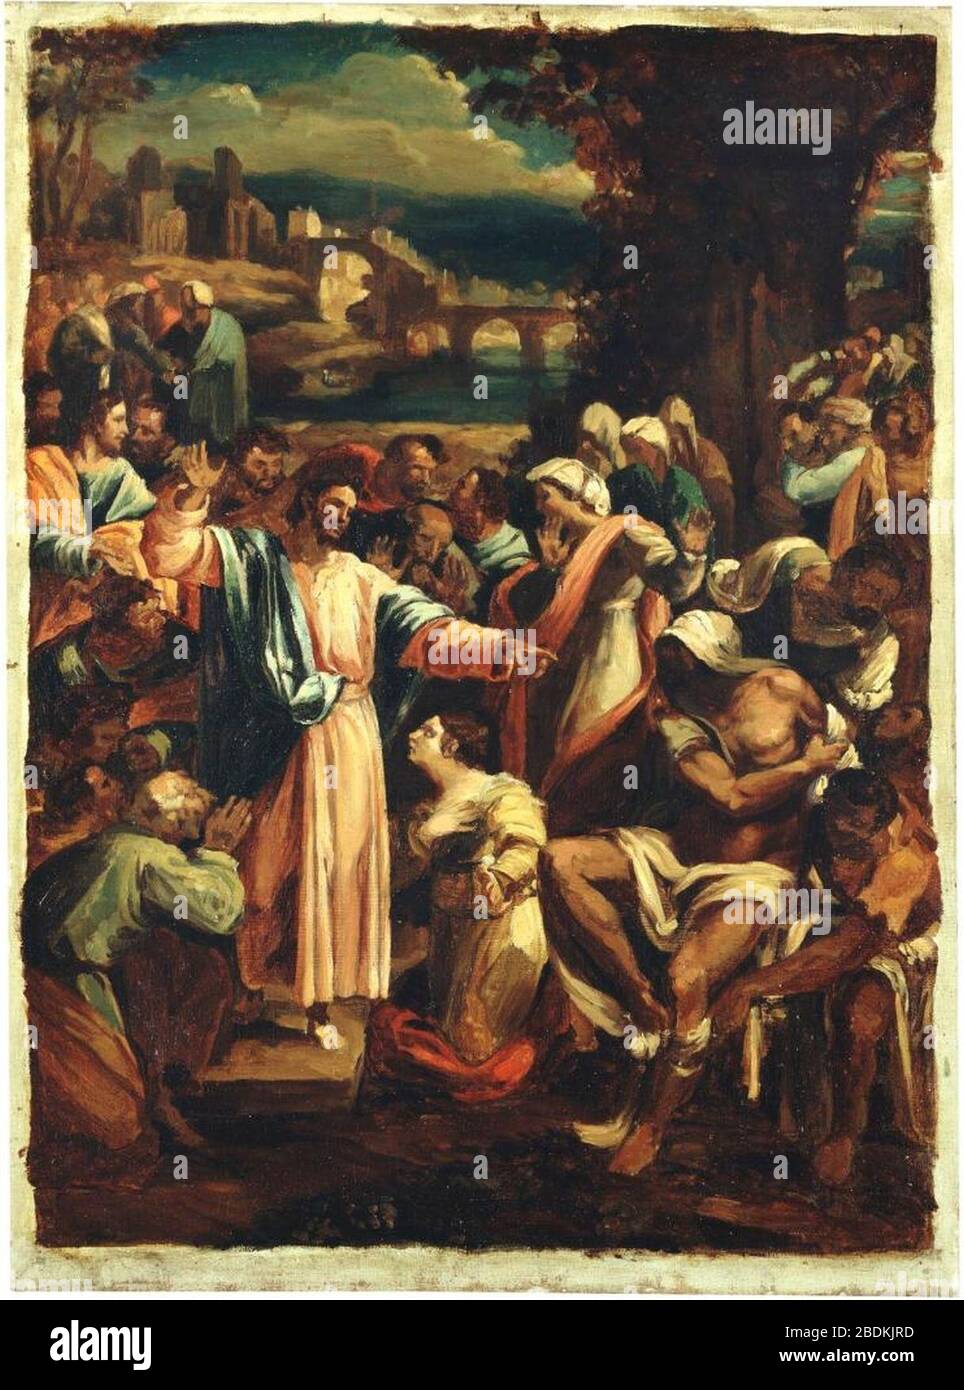 Géricault (zugeschrieben) - The raising of Lazarus, um 1820. Stock Photo